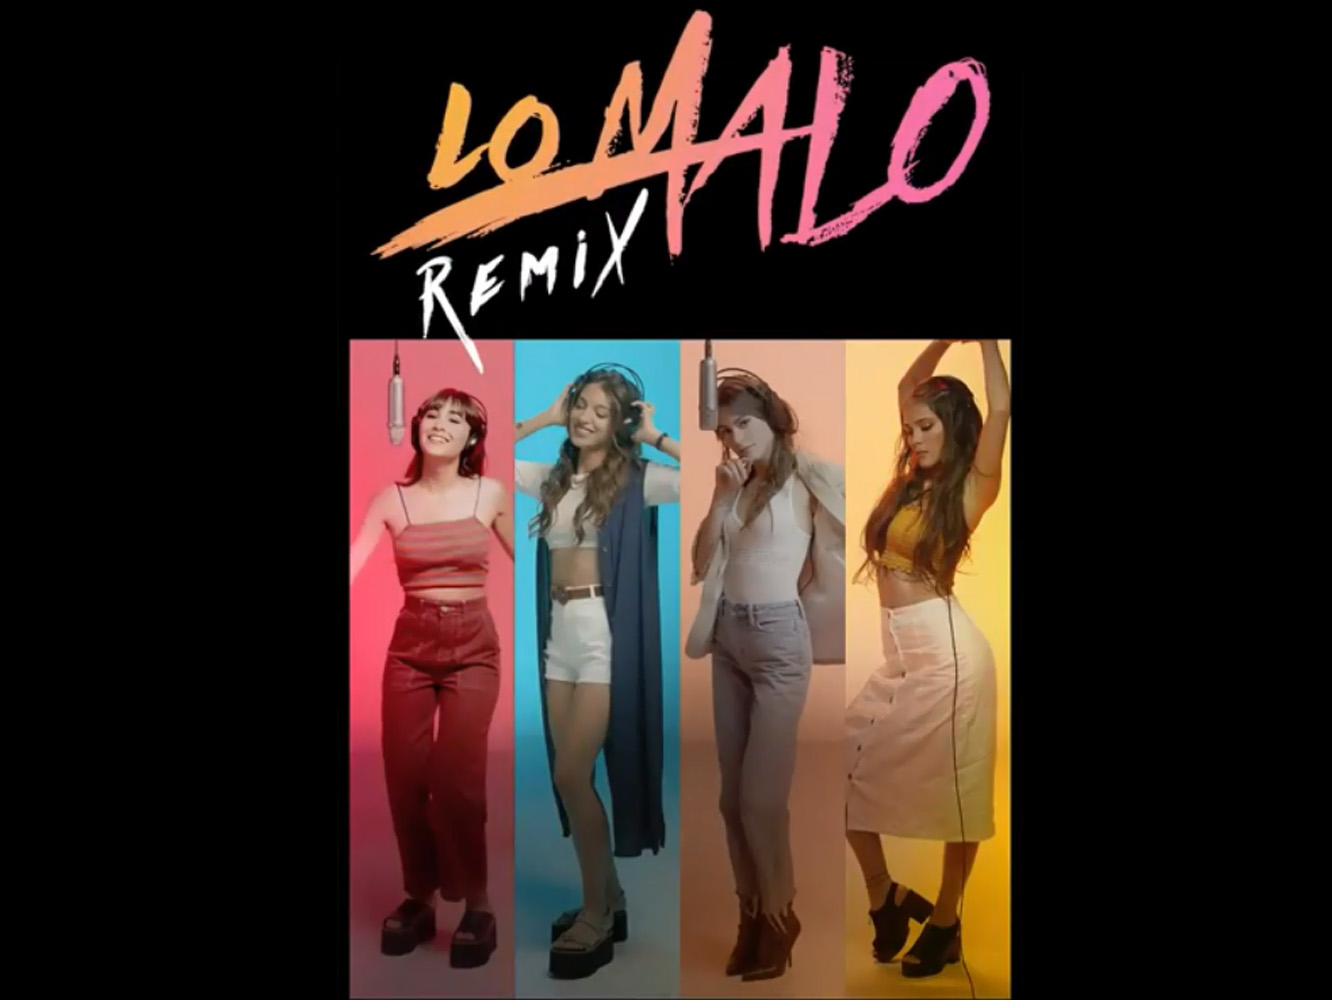  Aitana, Ana Guerra, Tini & Greeicy se unen en el más que innecesario remix de ‘Lo Malo’